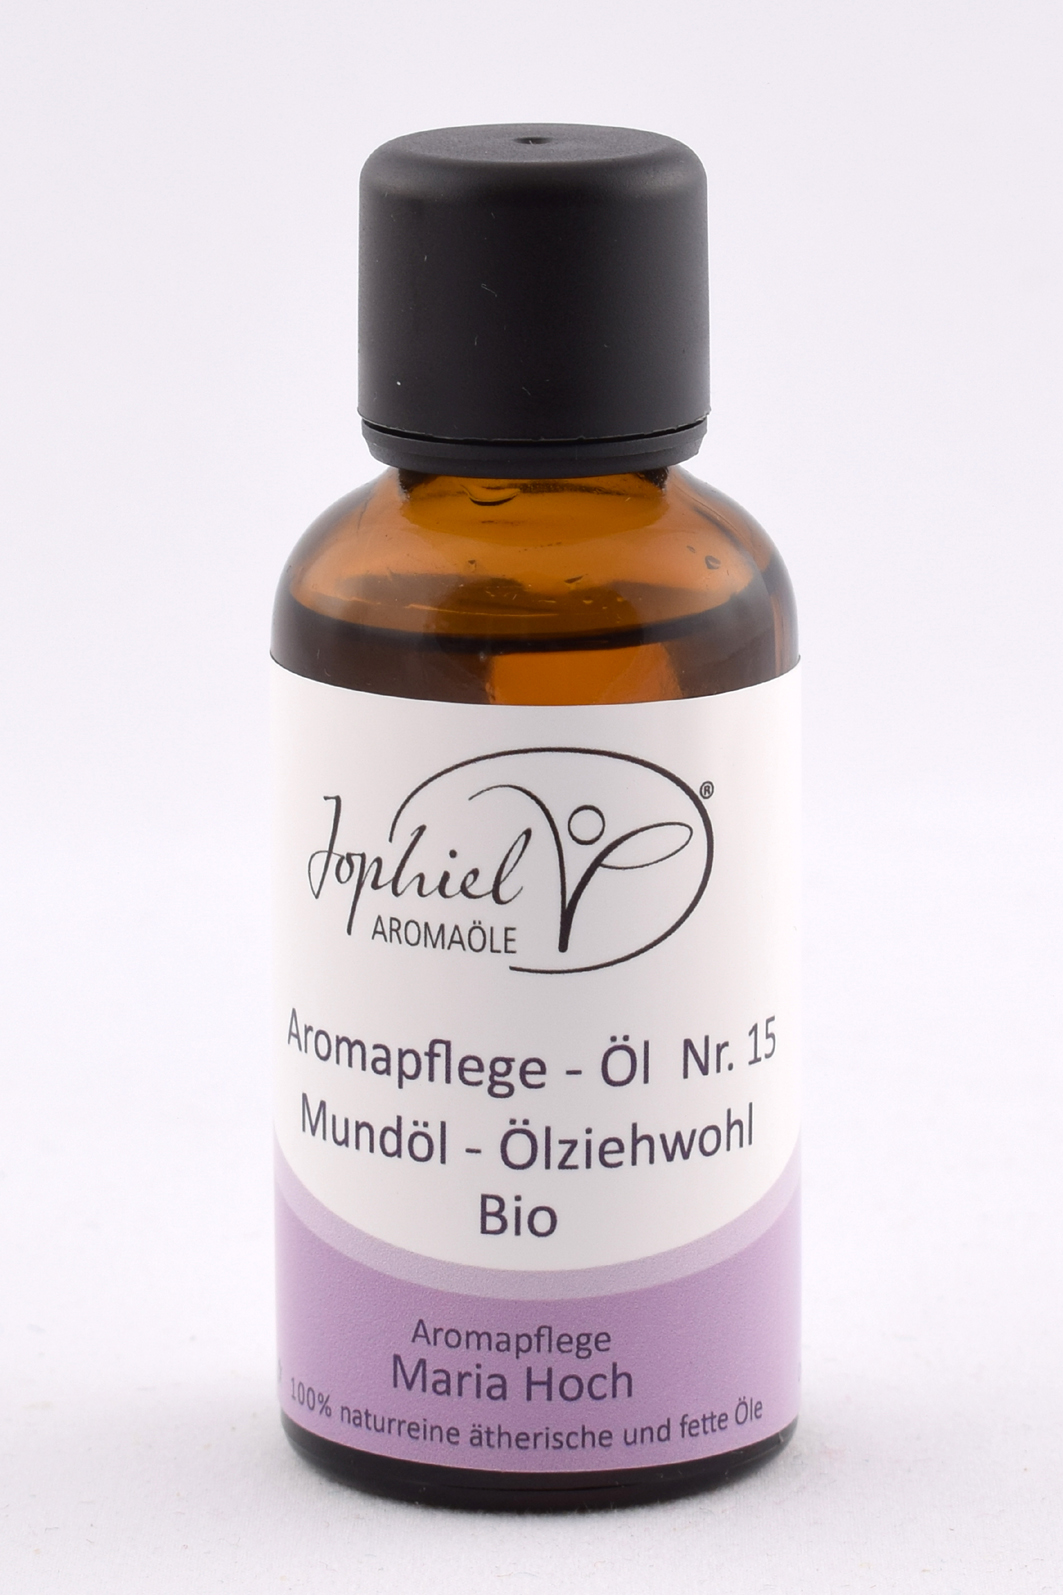 Aromapflege-Öl Nr. 15 Mundöl-Ölziehwohl Bio 50 ml 